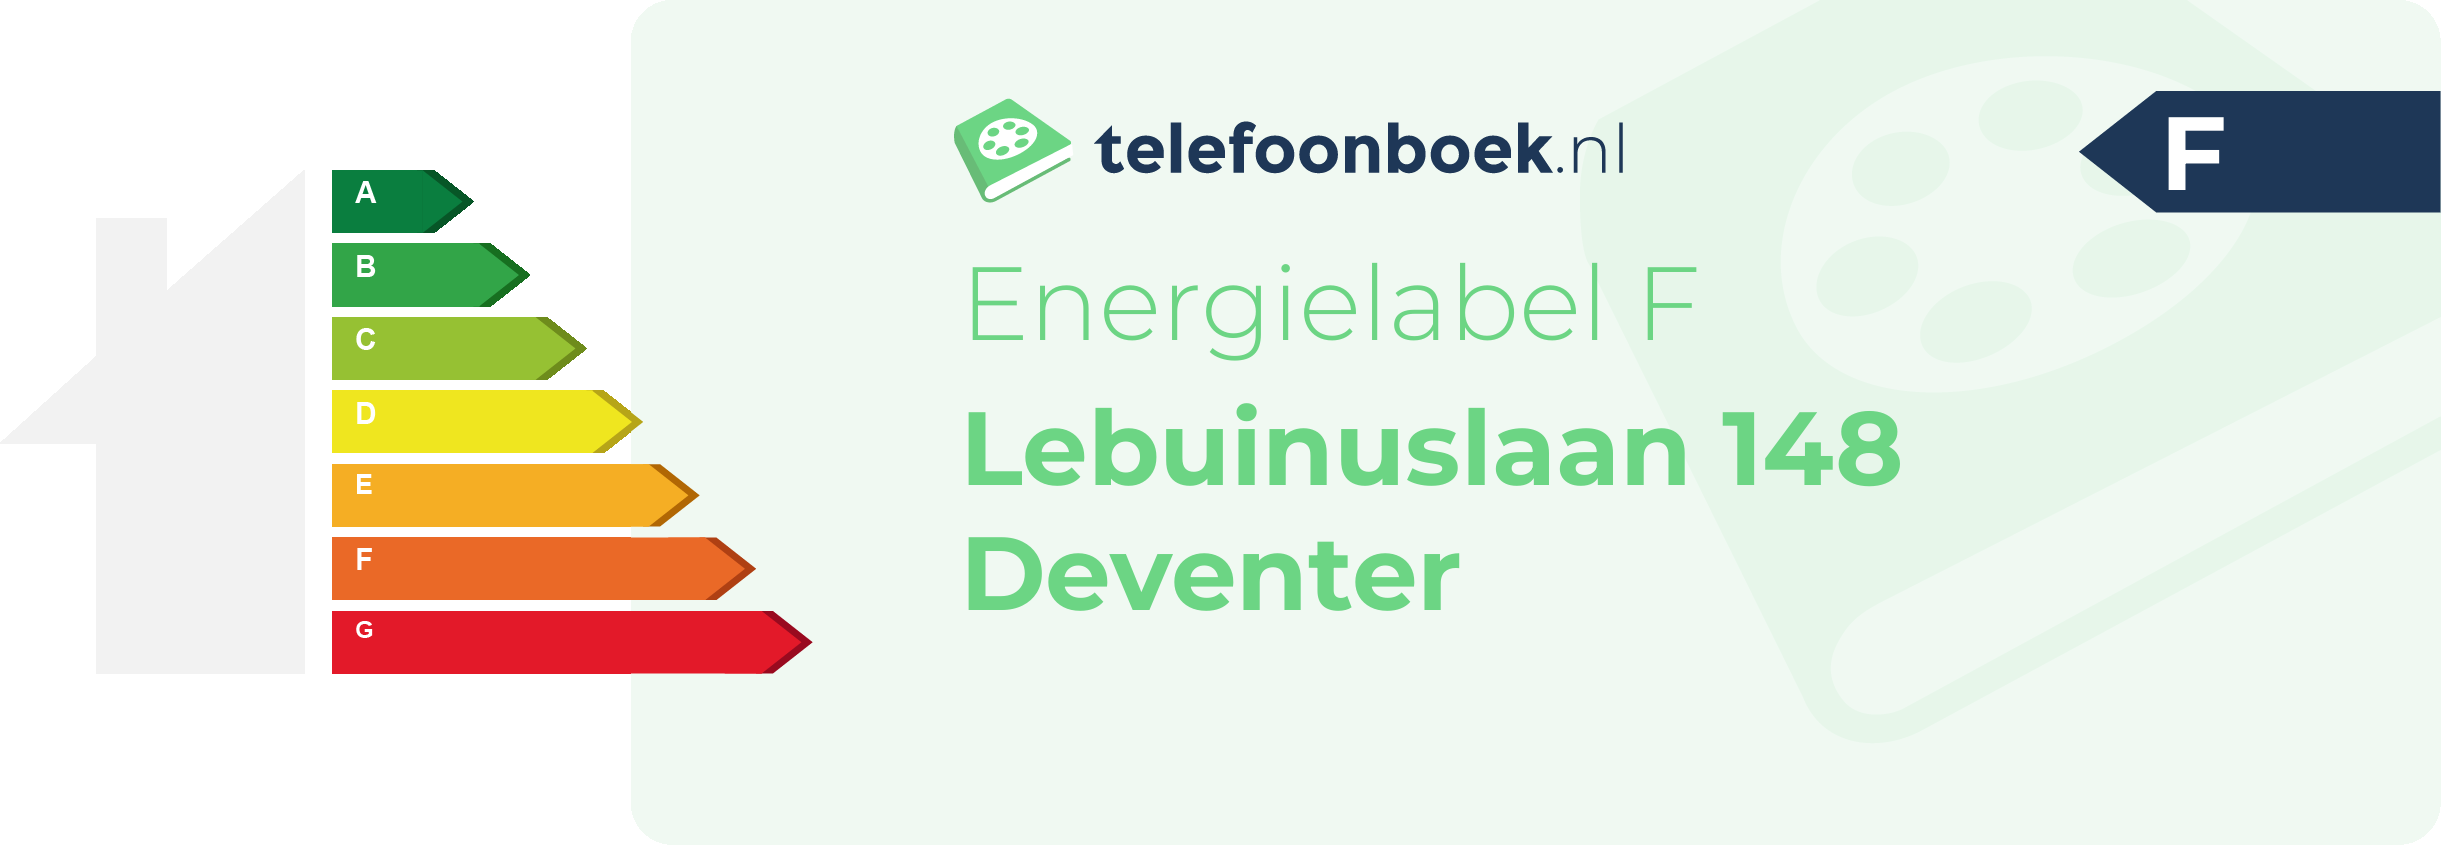 Energielabel Lebuinuslaan 148 Deventer